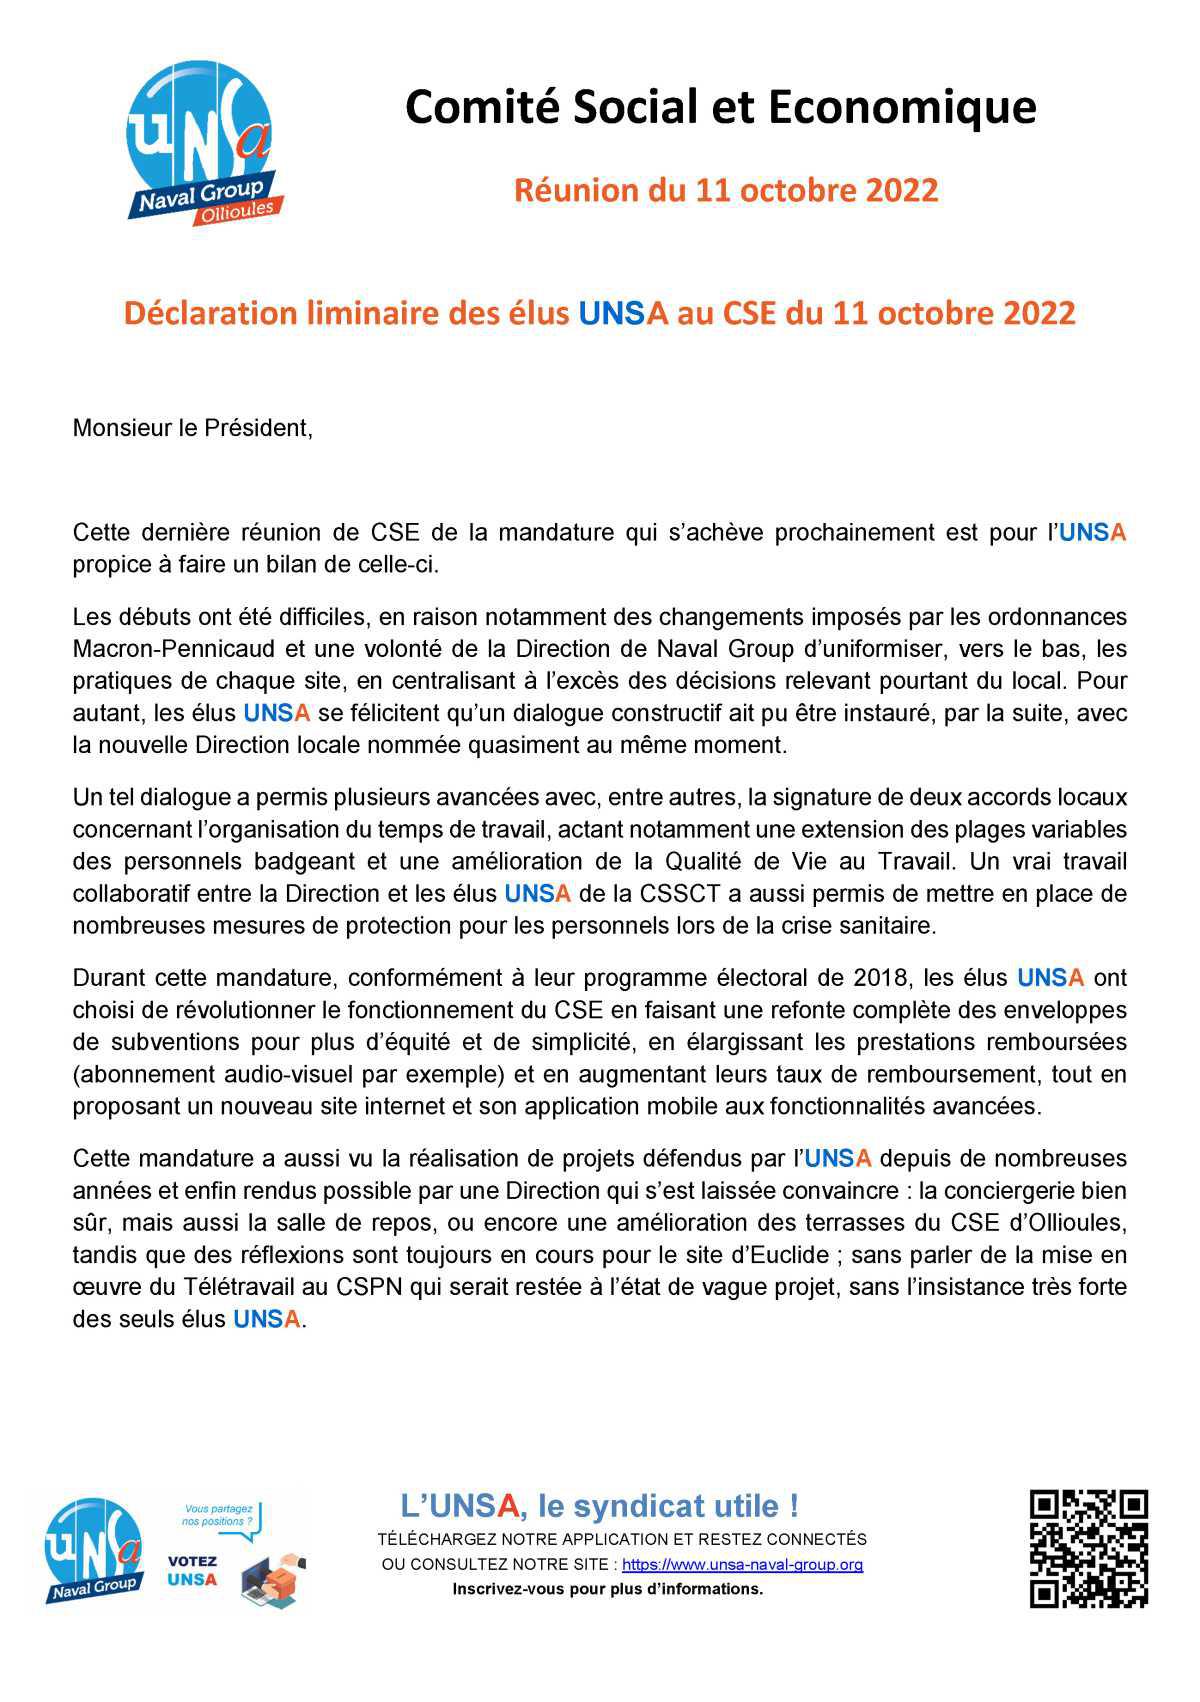 CSE d'Ollioules - Réunion du 11 octobre 2022 - déclaration liminaire